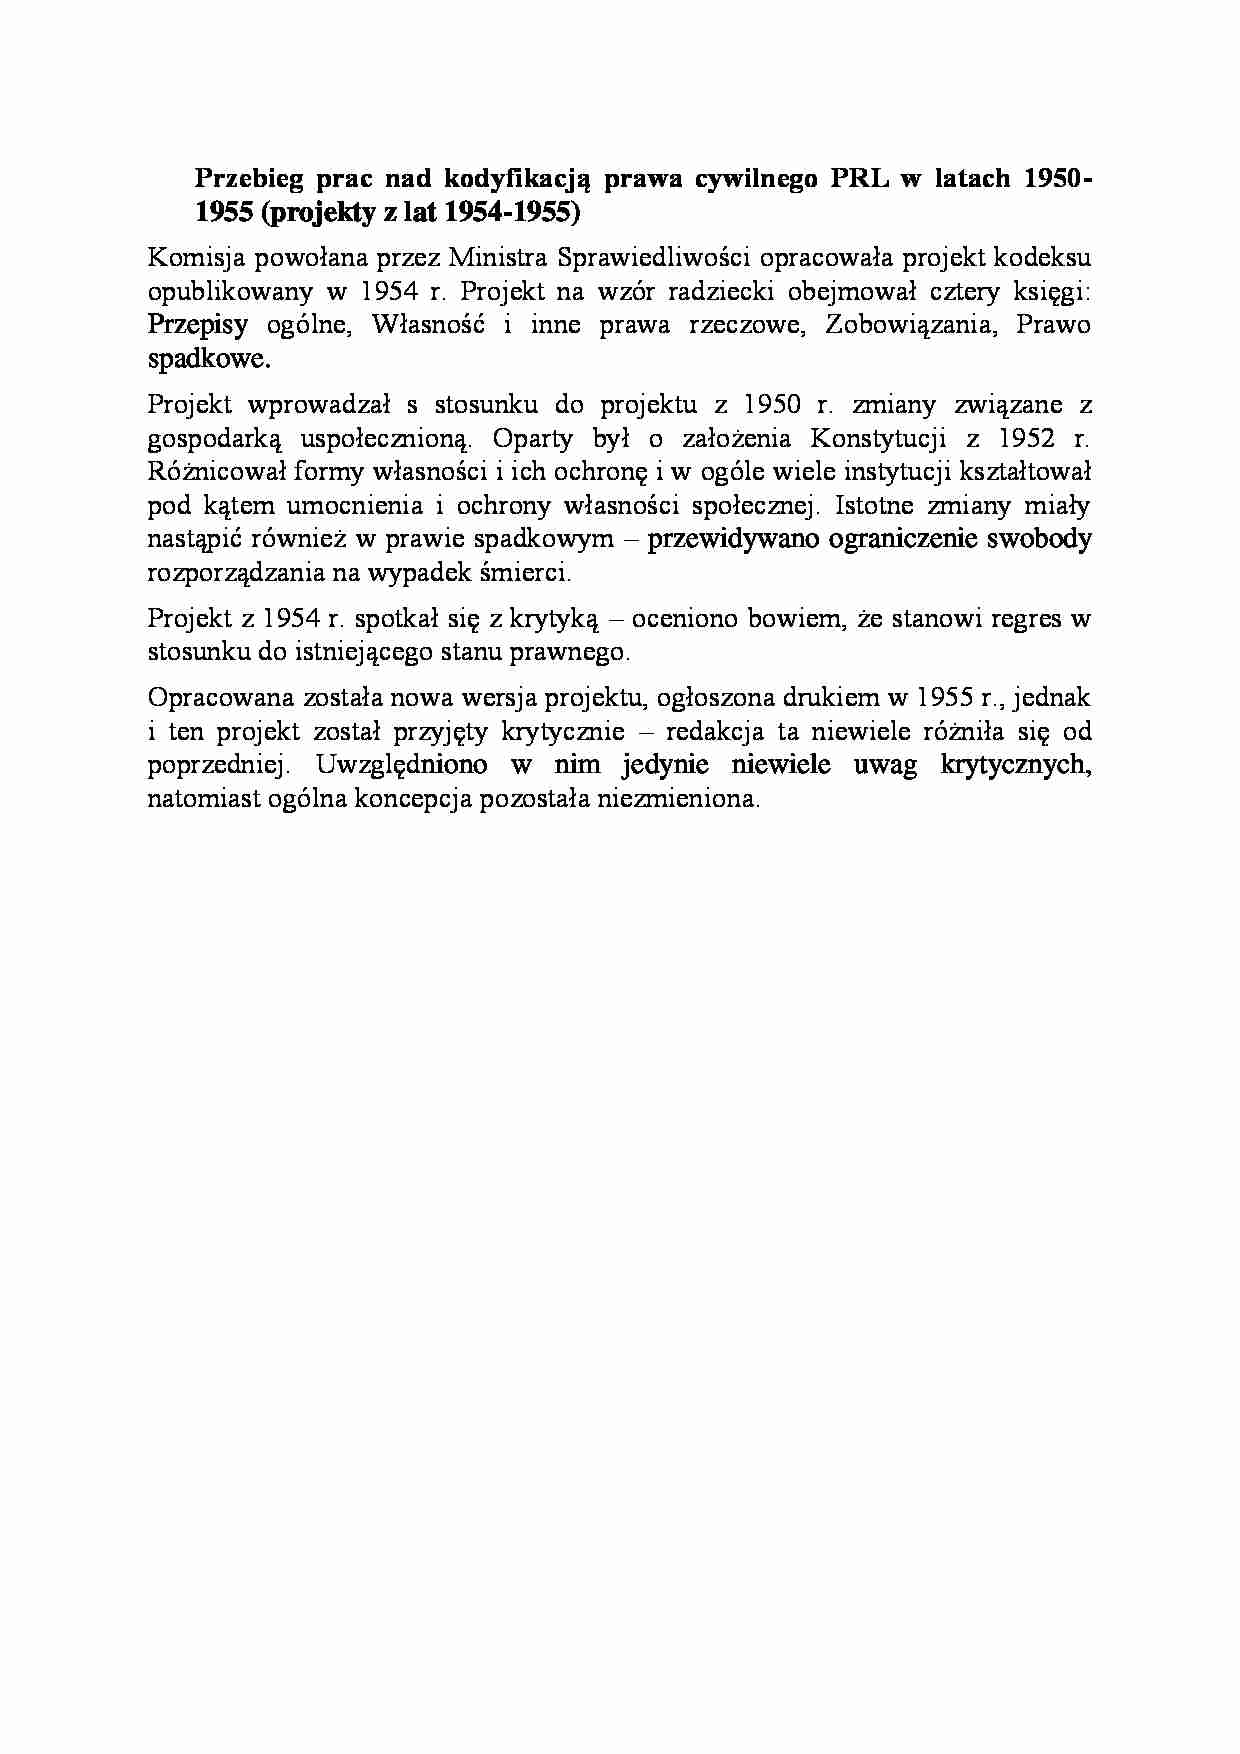 Przebieg prac nad kodyfikacją prawa cywilnego PRL w latach 1950-1955-opracowanie - strona 1